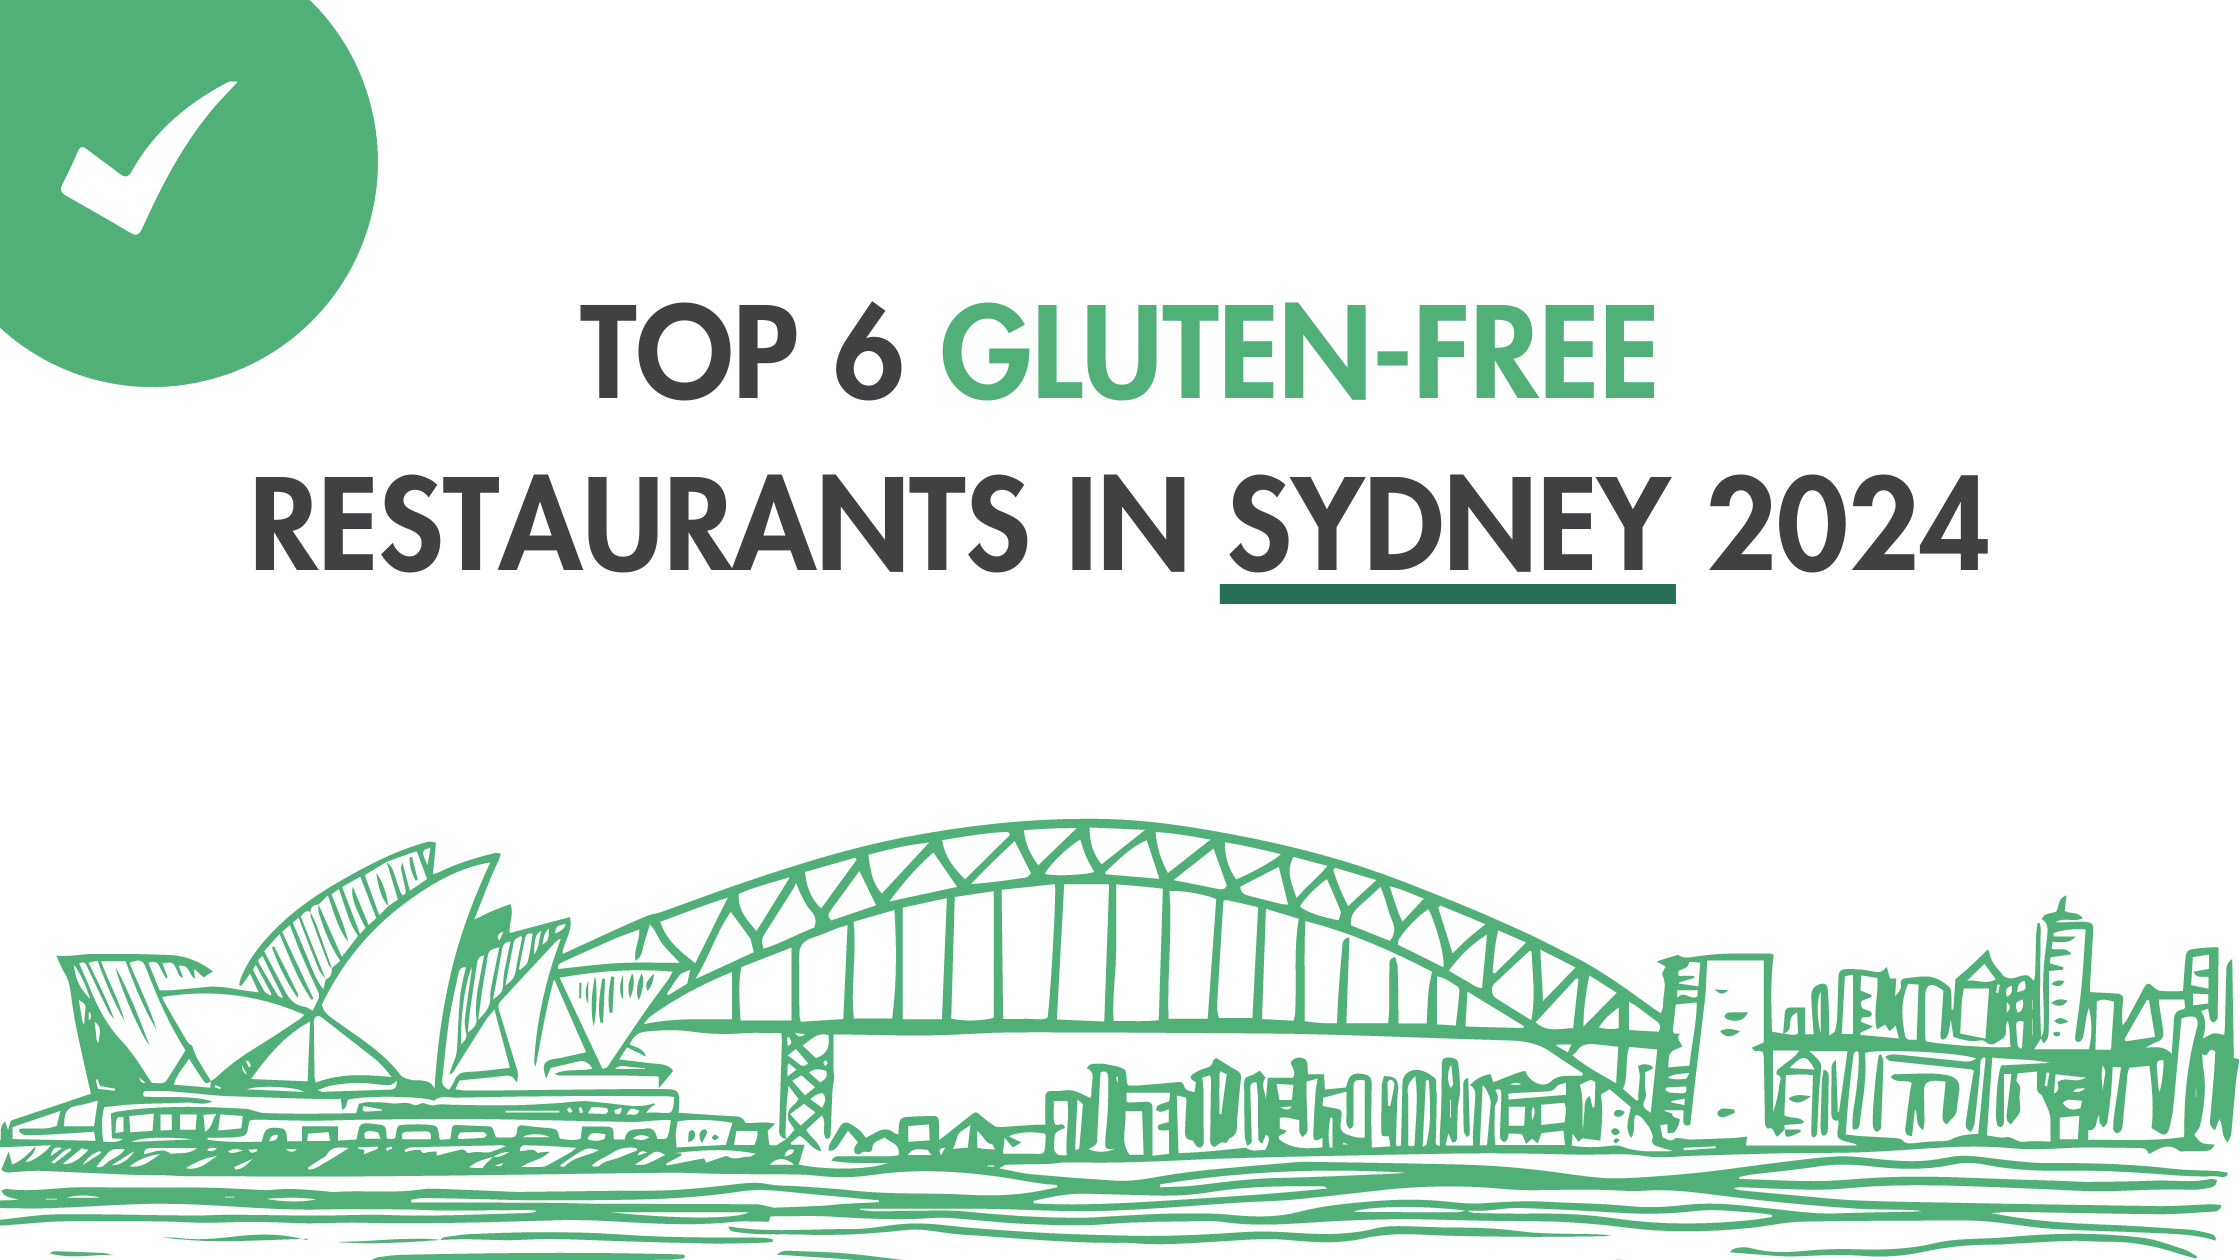 Top 6 Gluten-Free Restaurants in Sydney 2024